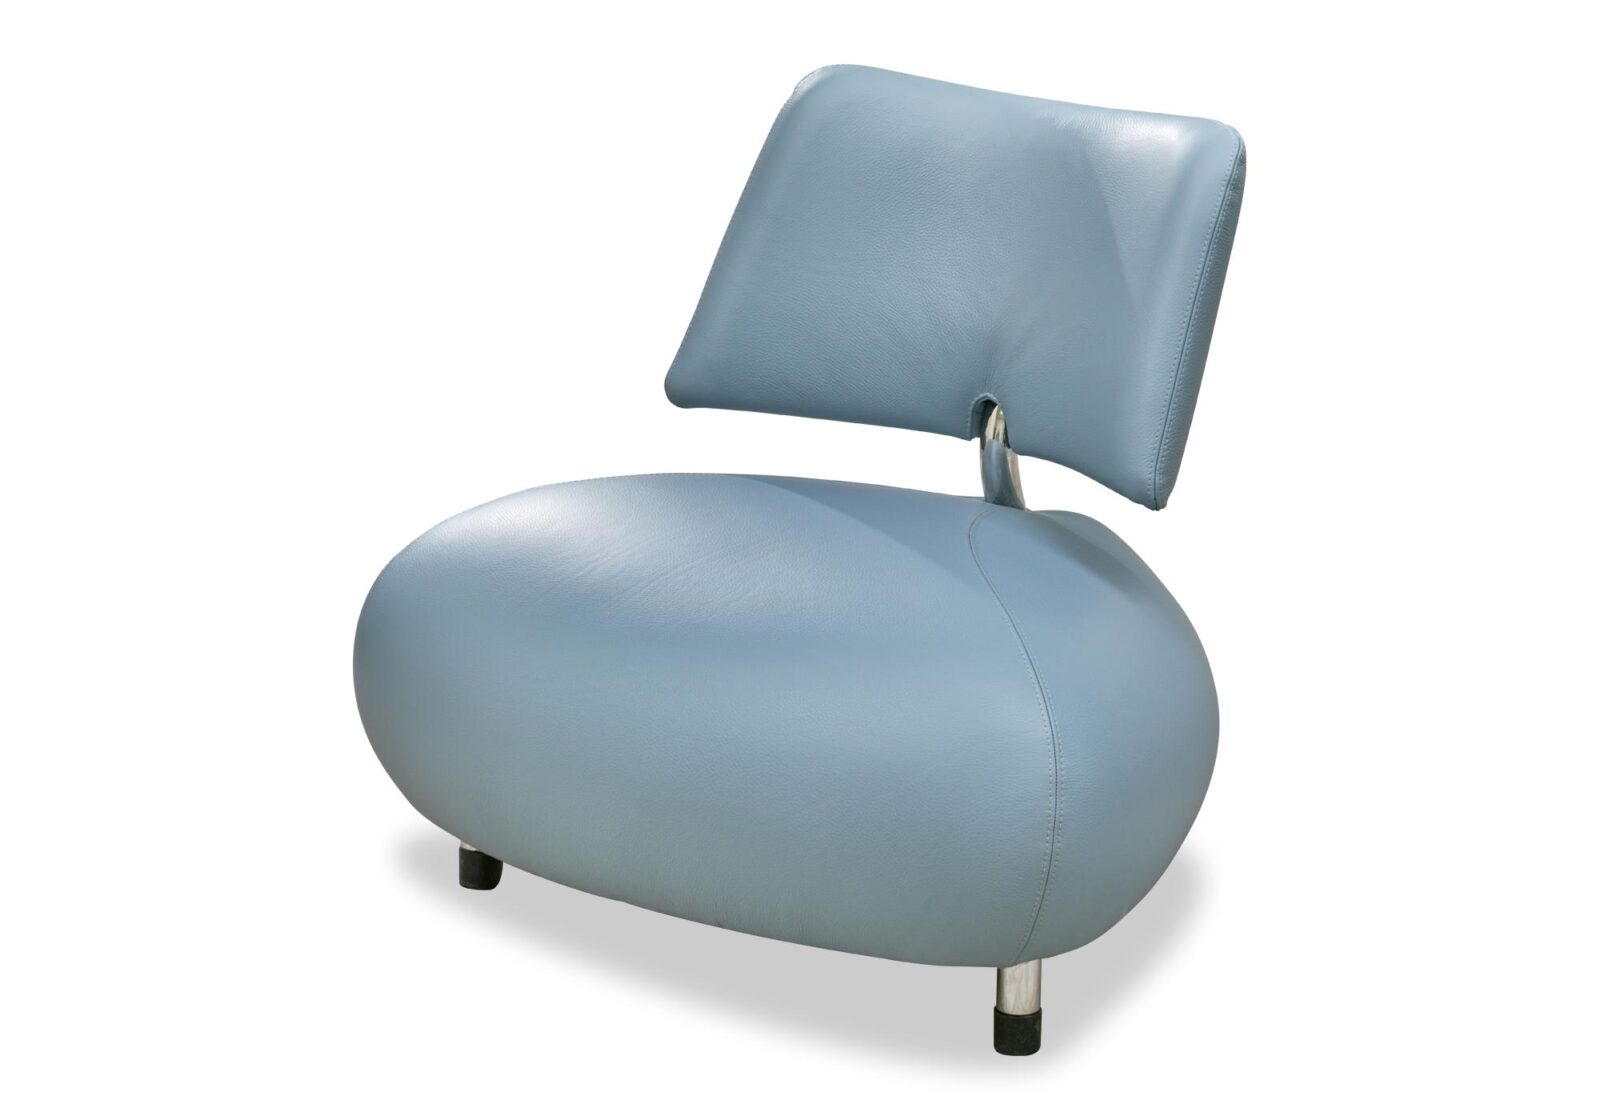 Sessel Pallone mit Rückenlehne. Bezug: Leder. Farbe: Babyblau. Erhältlich bei Möbel Gallati.